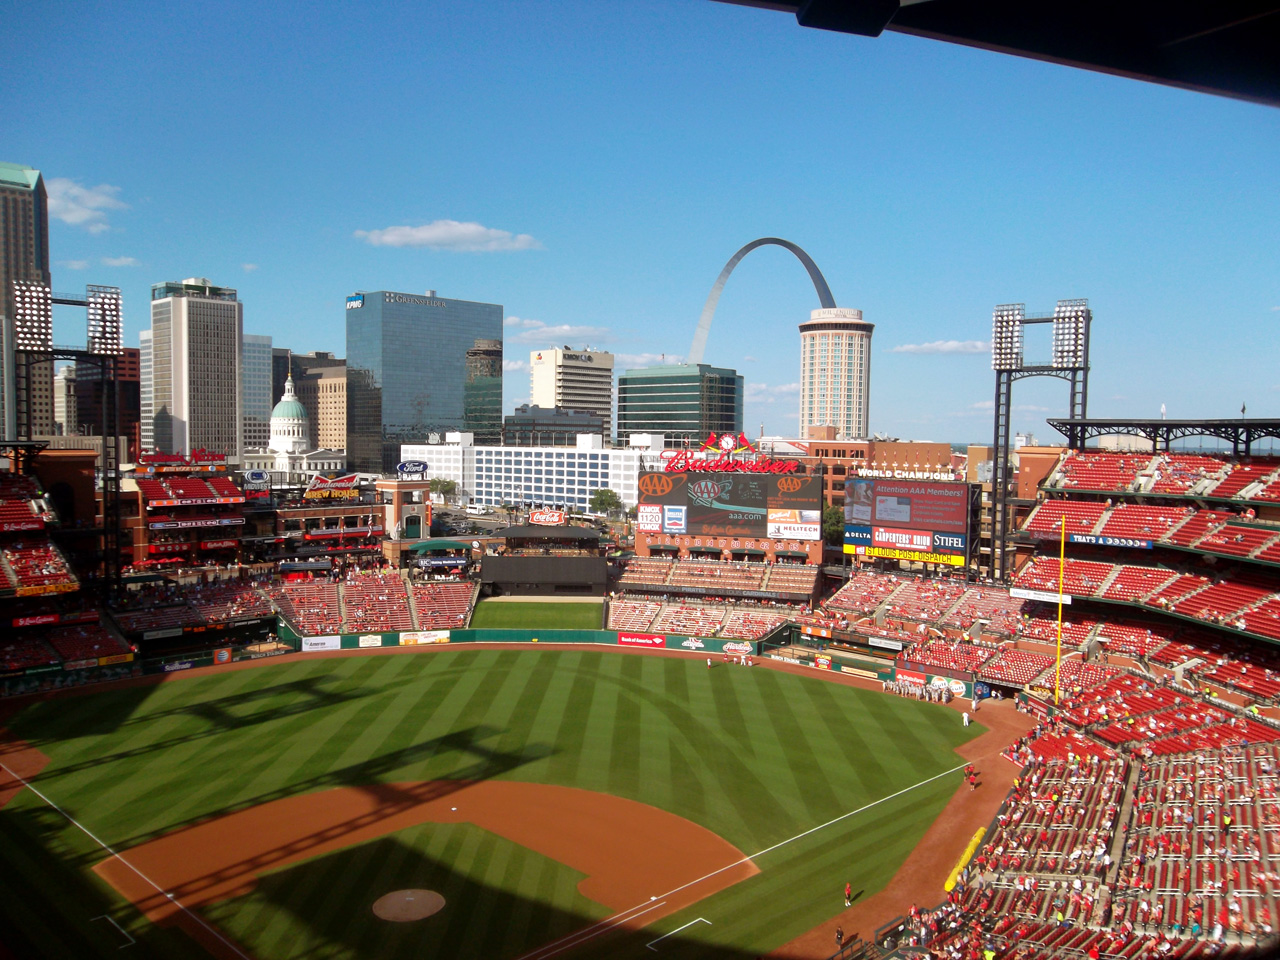 2014-07-10, 002, Cardinals Baseball Game